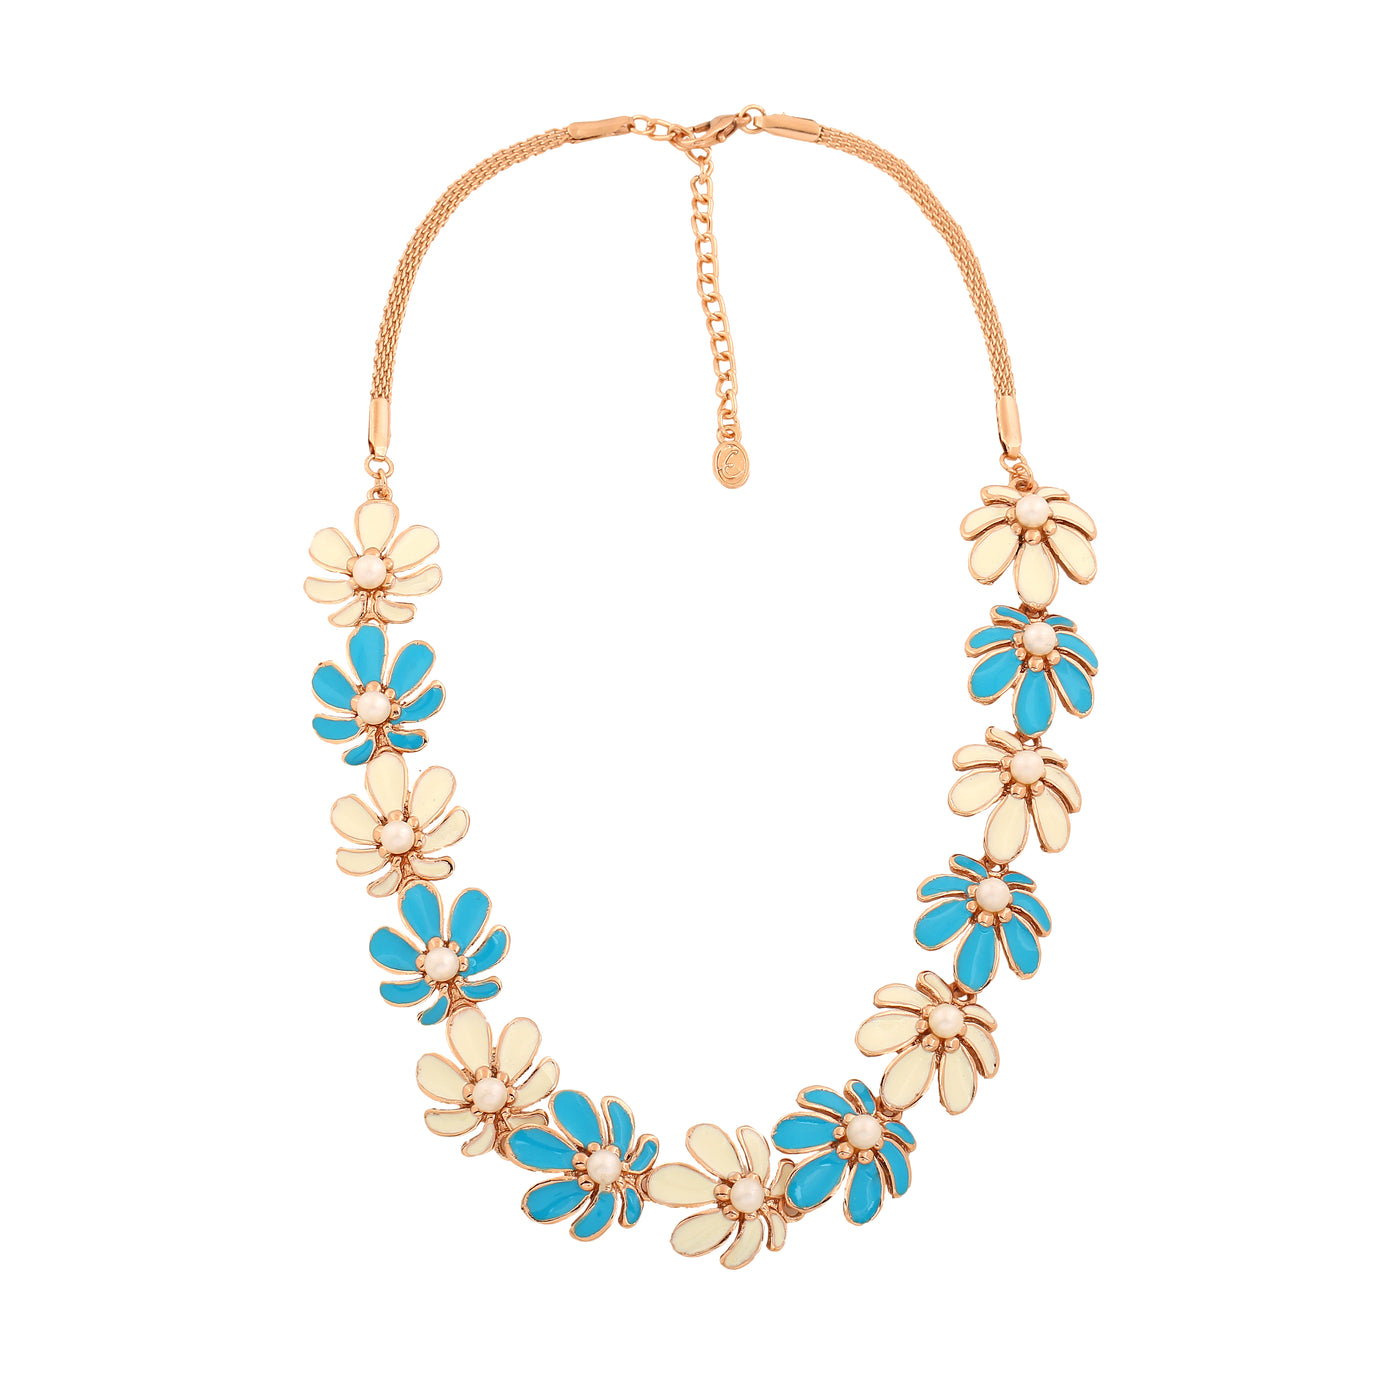 Estele Rose Gold Plated Floret Designer Necklace Set with Pearls & Enamel for Women